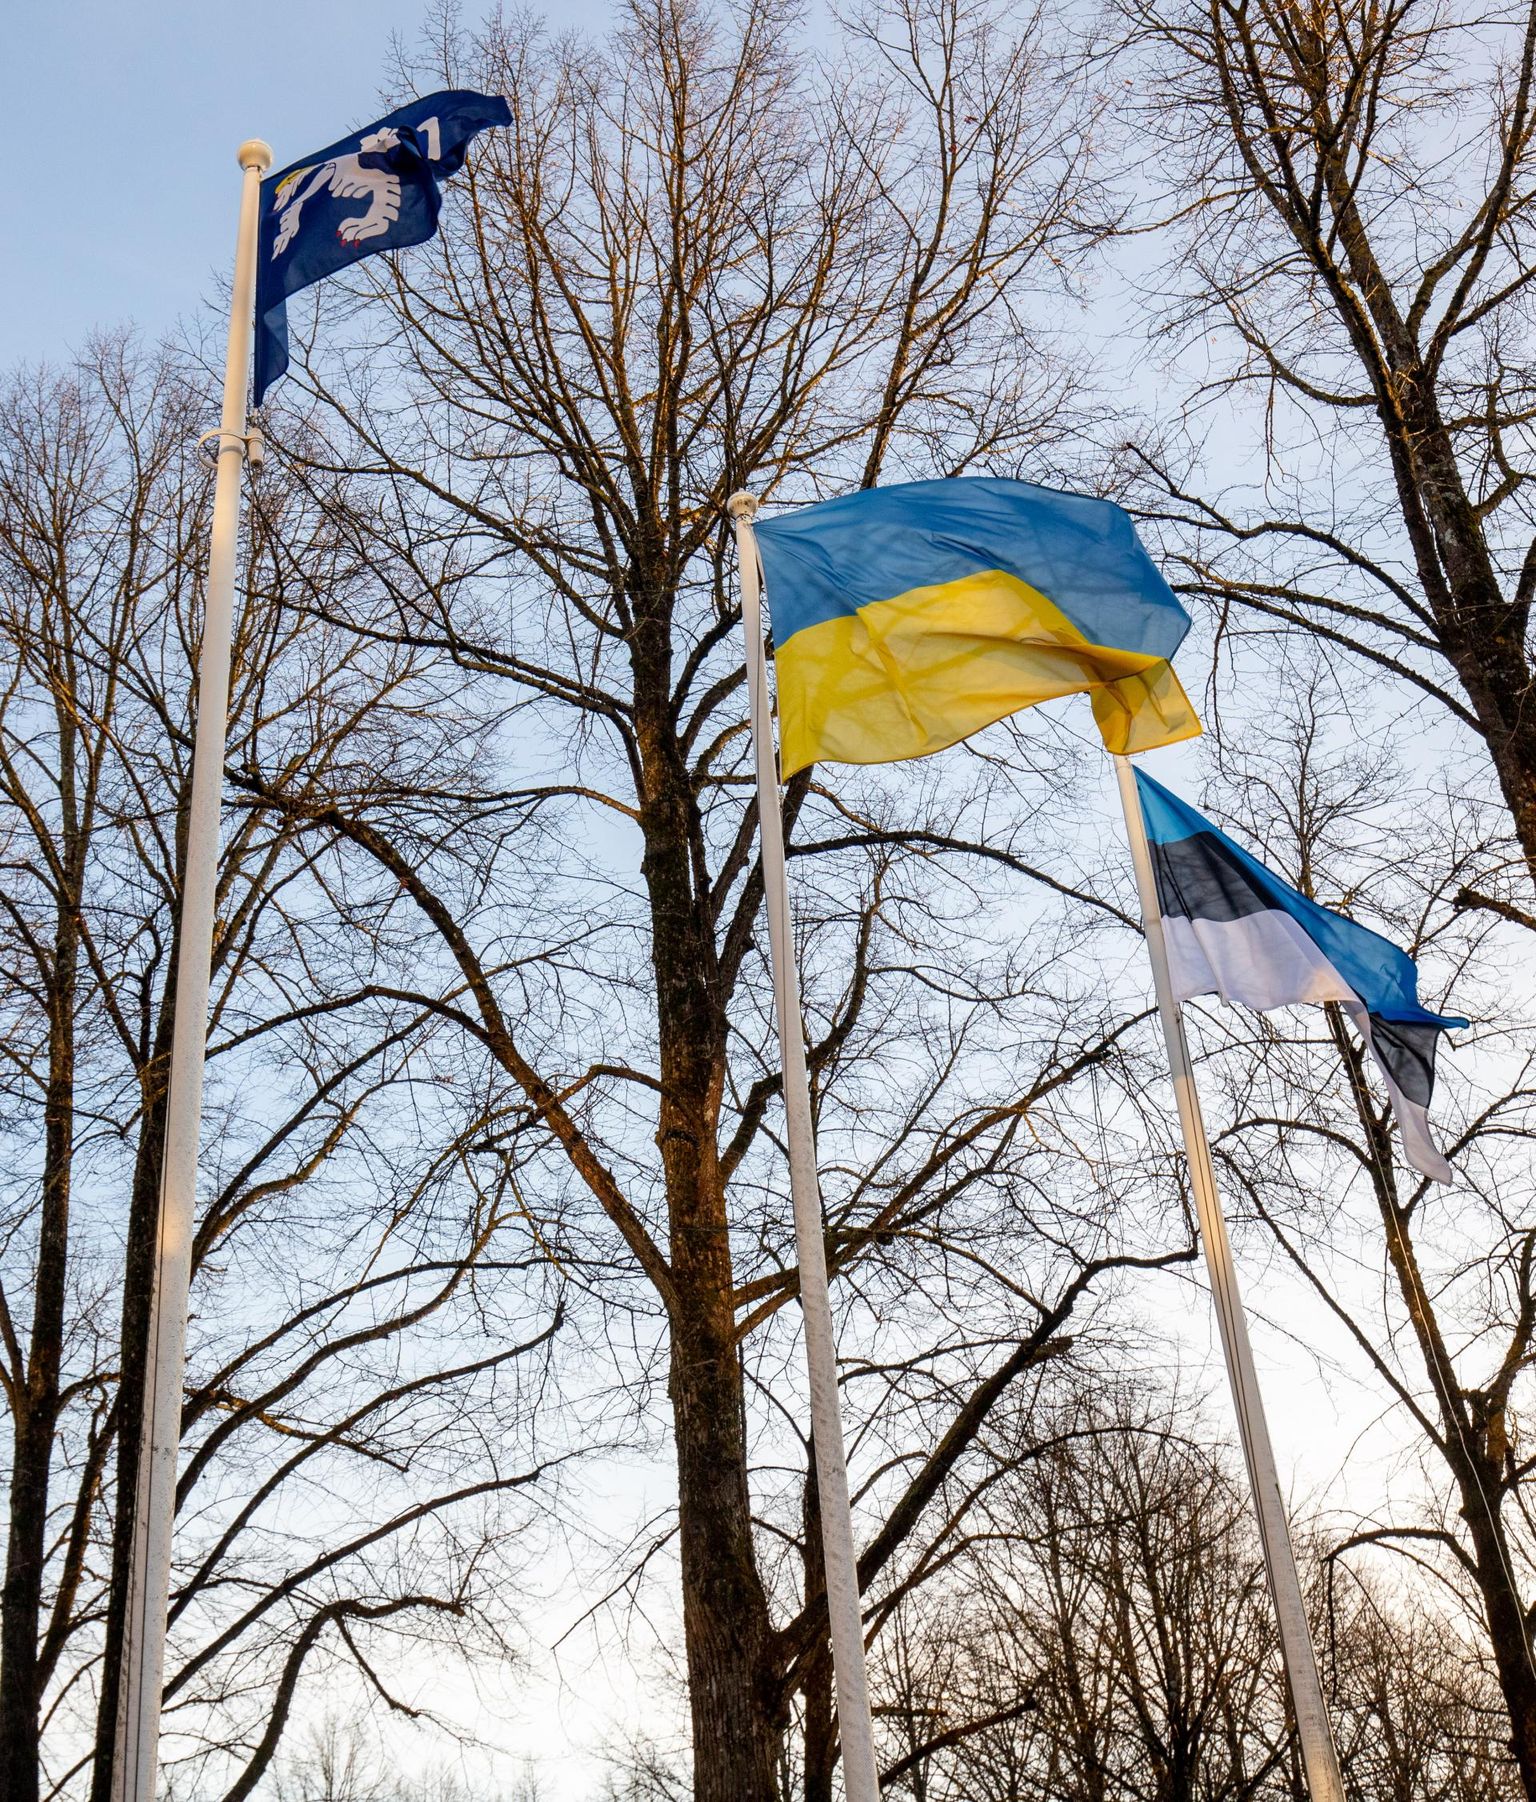 Eesti ja samuti Pärnumaa peavad suutma korraga nii siia jäävaid ukrainlasi lõimida kui tegelda nende tagasipöördumise toetamisega.